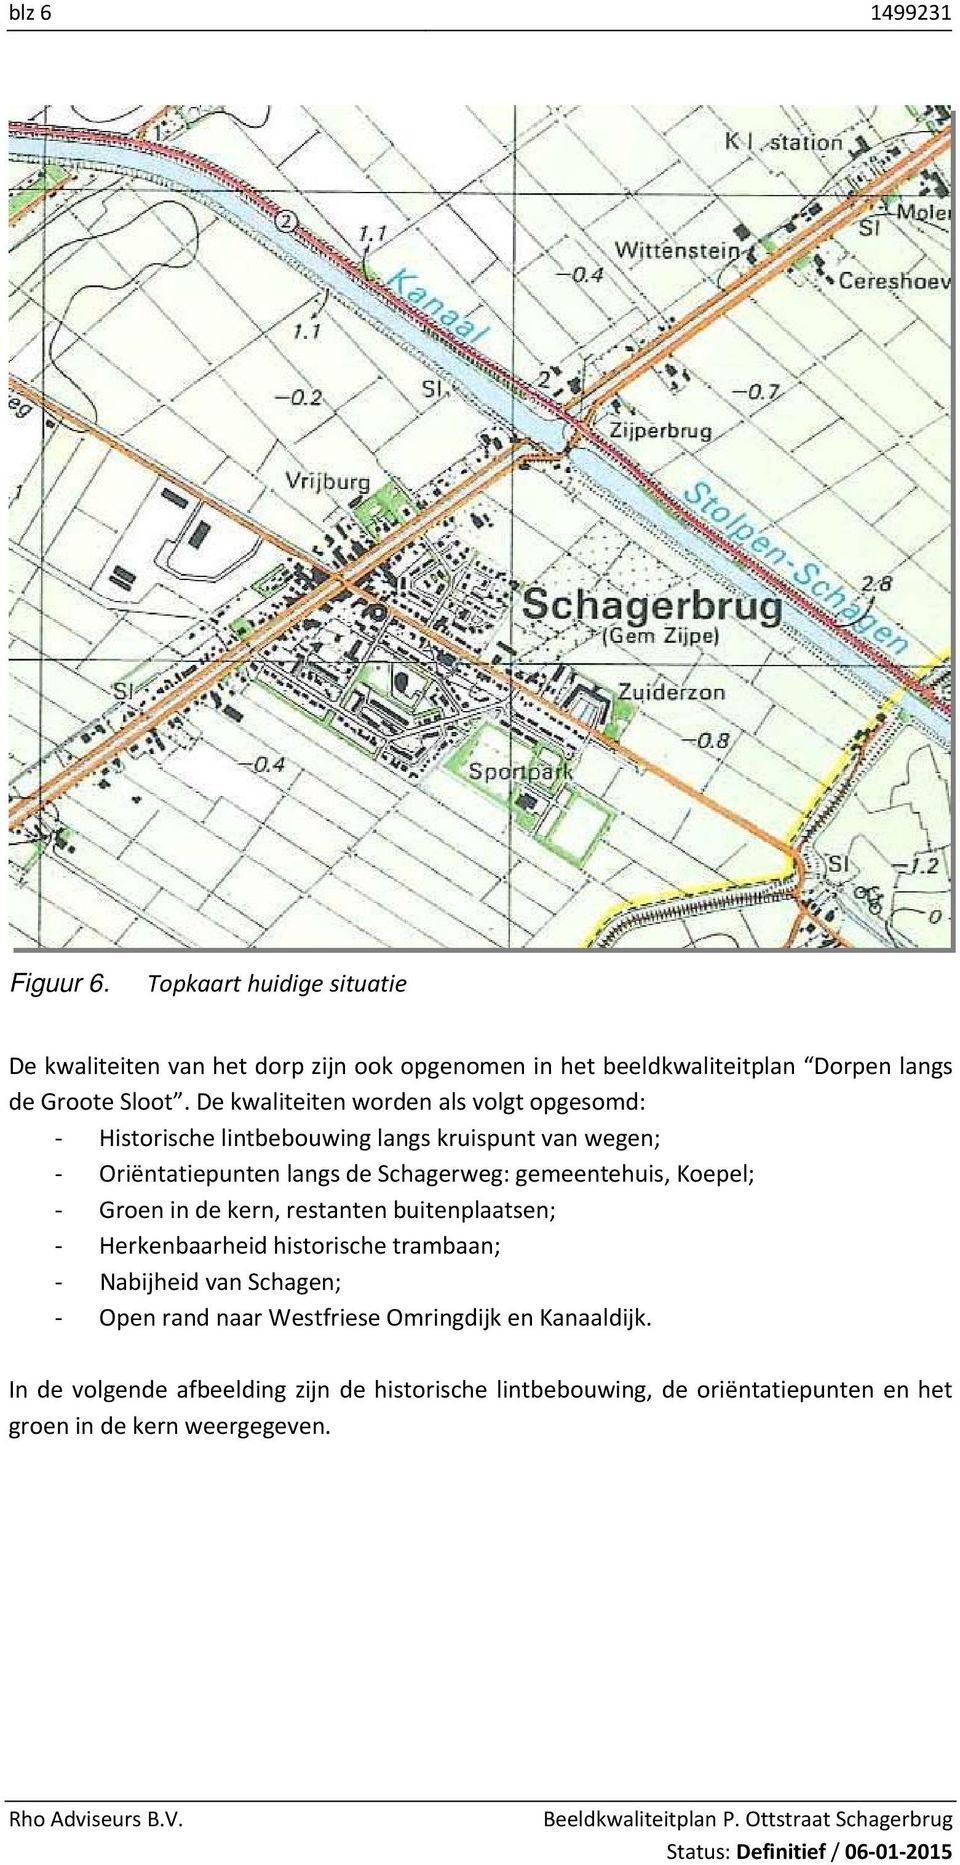 De kwaliteiten worden als volgt opgesomd: Historische lintbebouwing langs kruispunt van wegen; Oriëntatiepunten langs de Schagerweg: